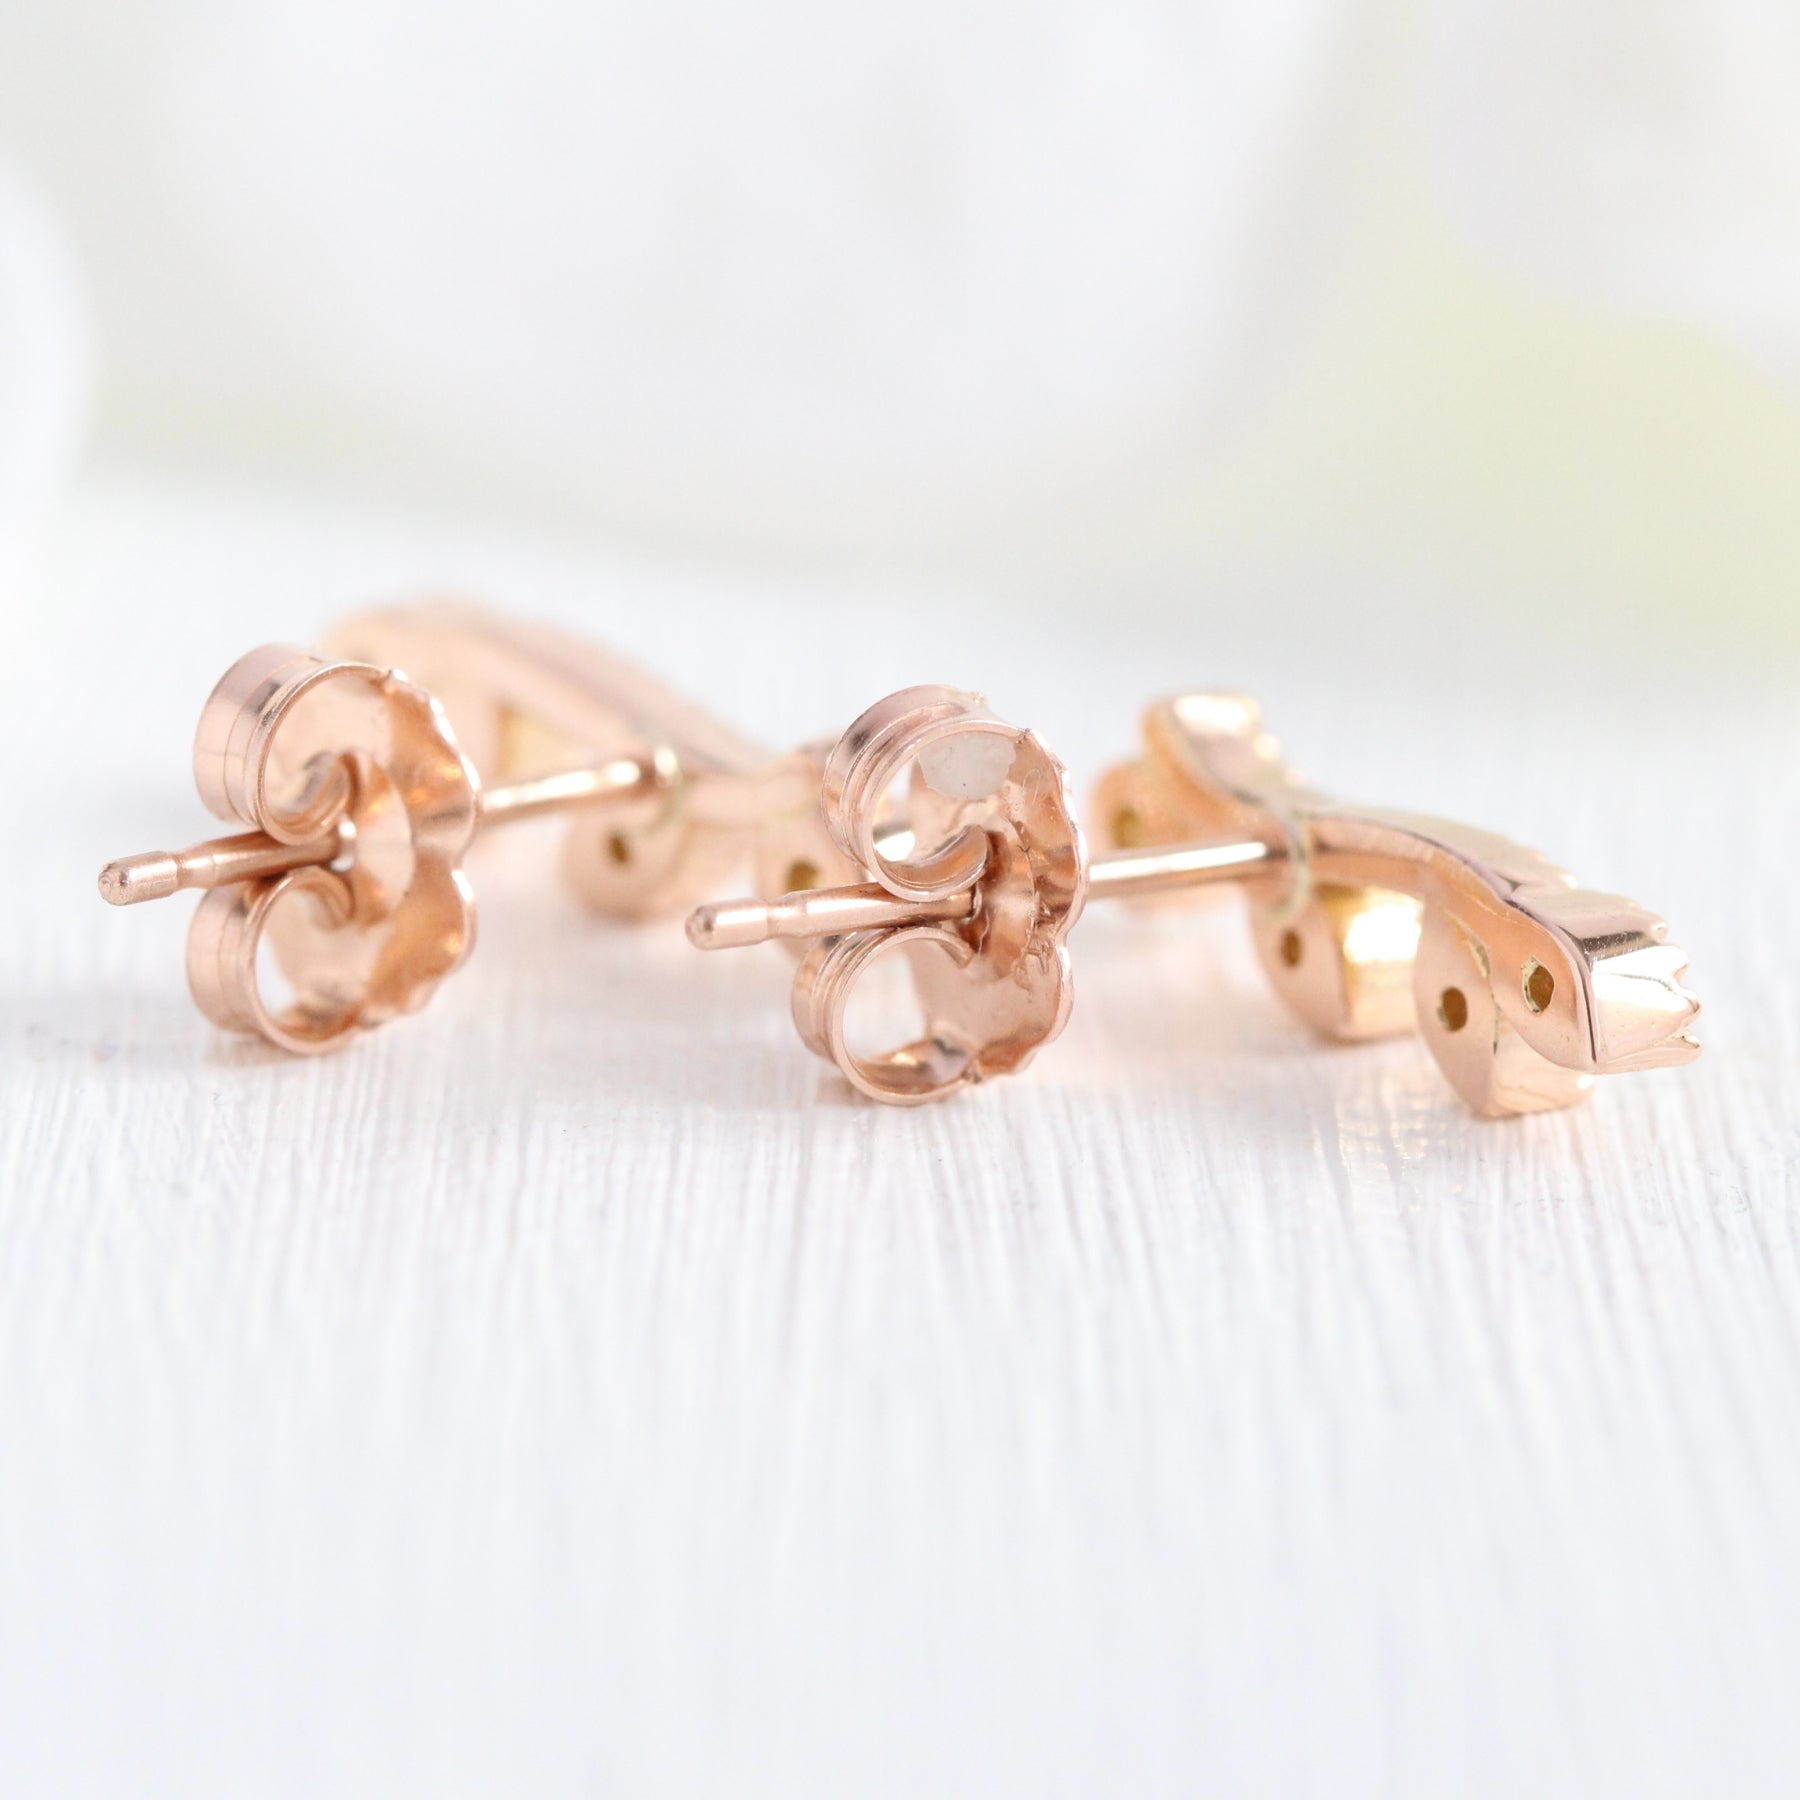 Crown Diamond Earrings Rose Gold Stud Earrings Curved Crawler Earrings